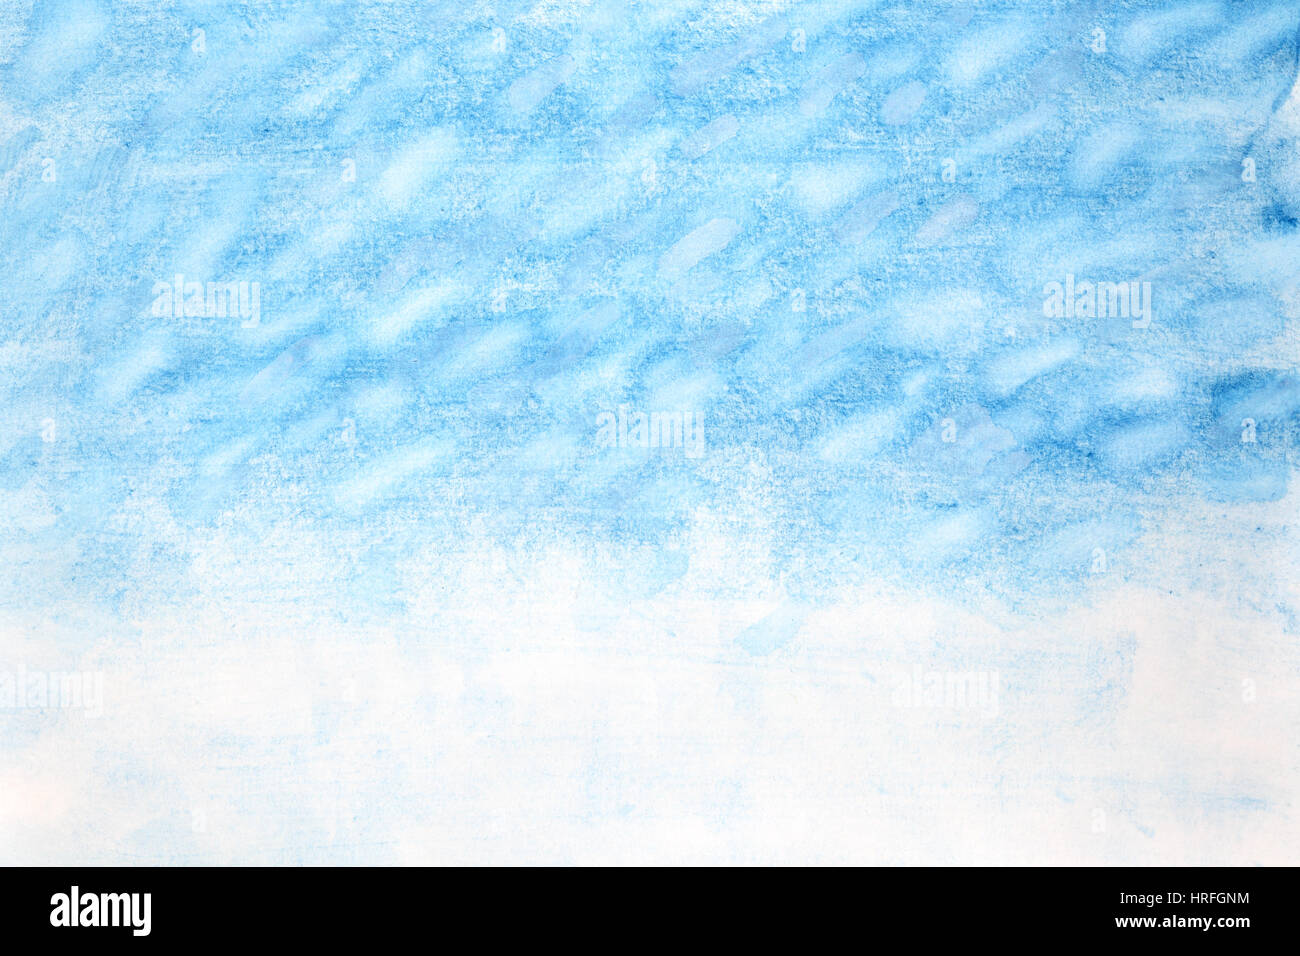 Tempête de neige - Hiver aquarelle abstract background Banque D'Images